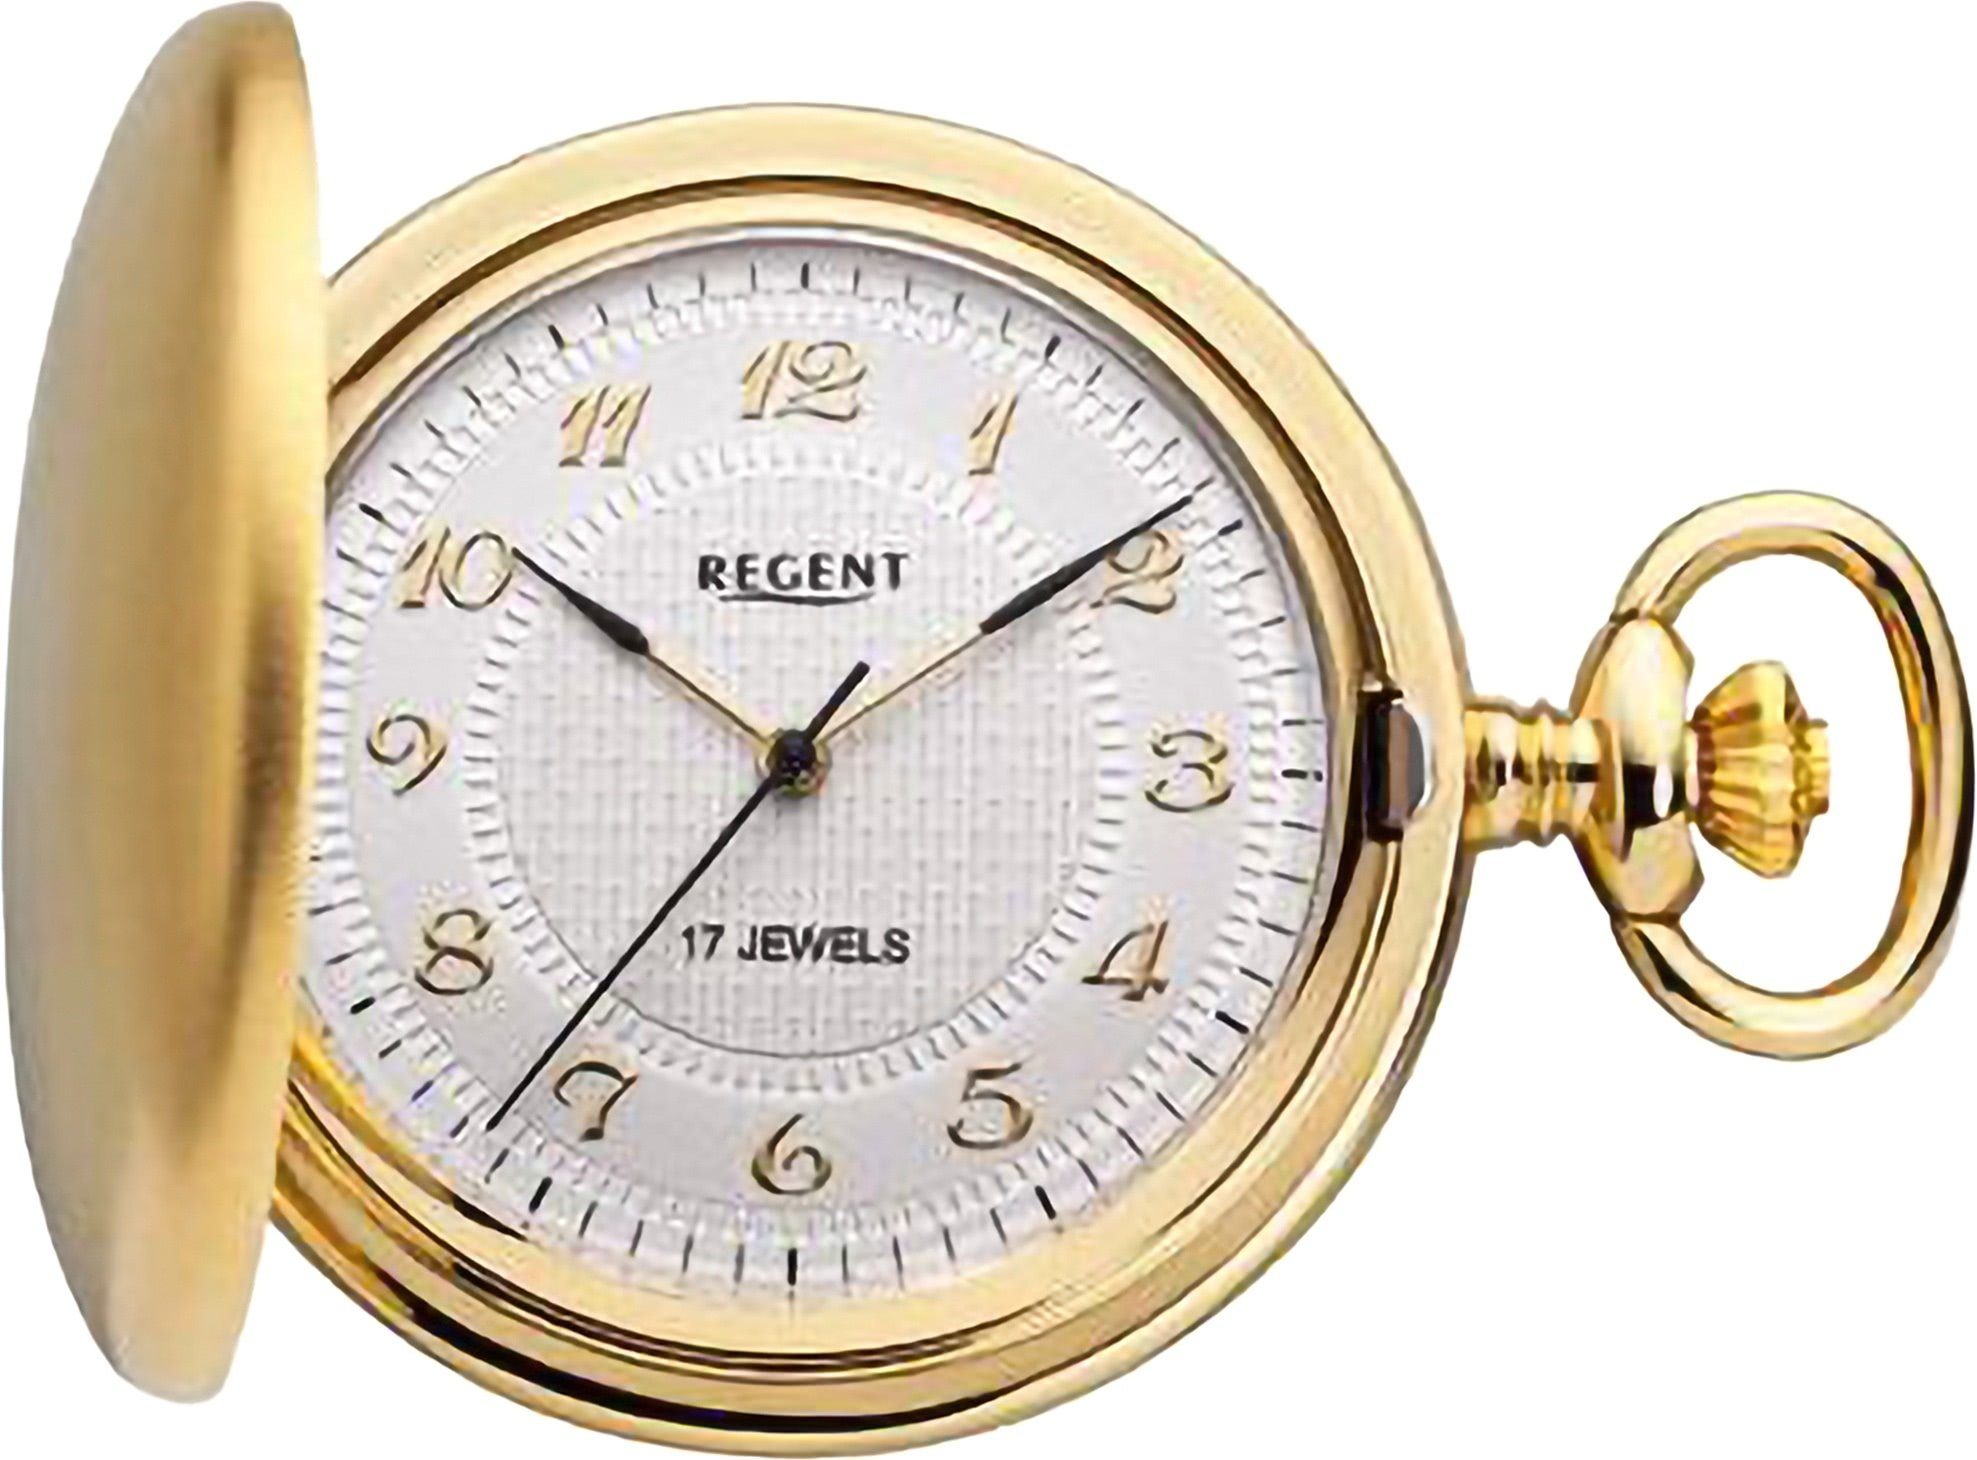 Regent Taschenuhr Regent Herren Taschenuhr Analog Gehäuse, (Analoguhr), Herren Taschenuhr rund, extra groß (ca. 44mm), Metall, Elegant